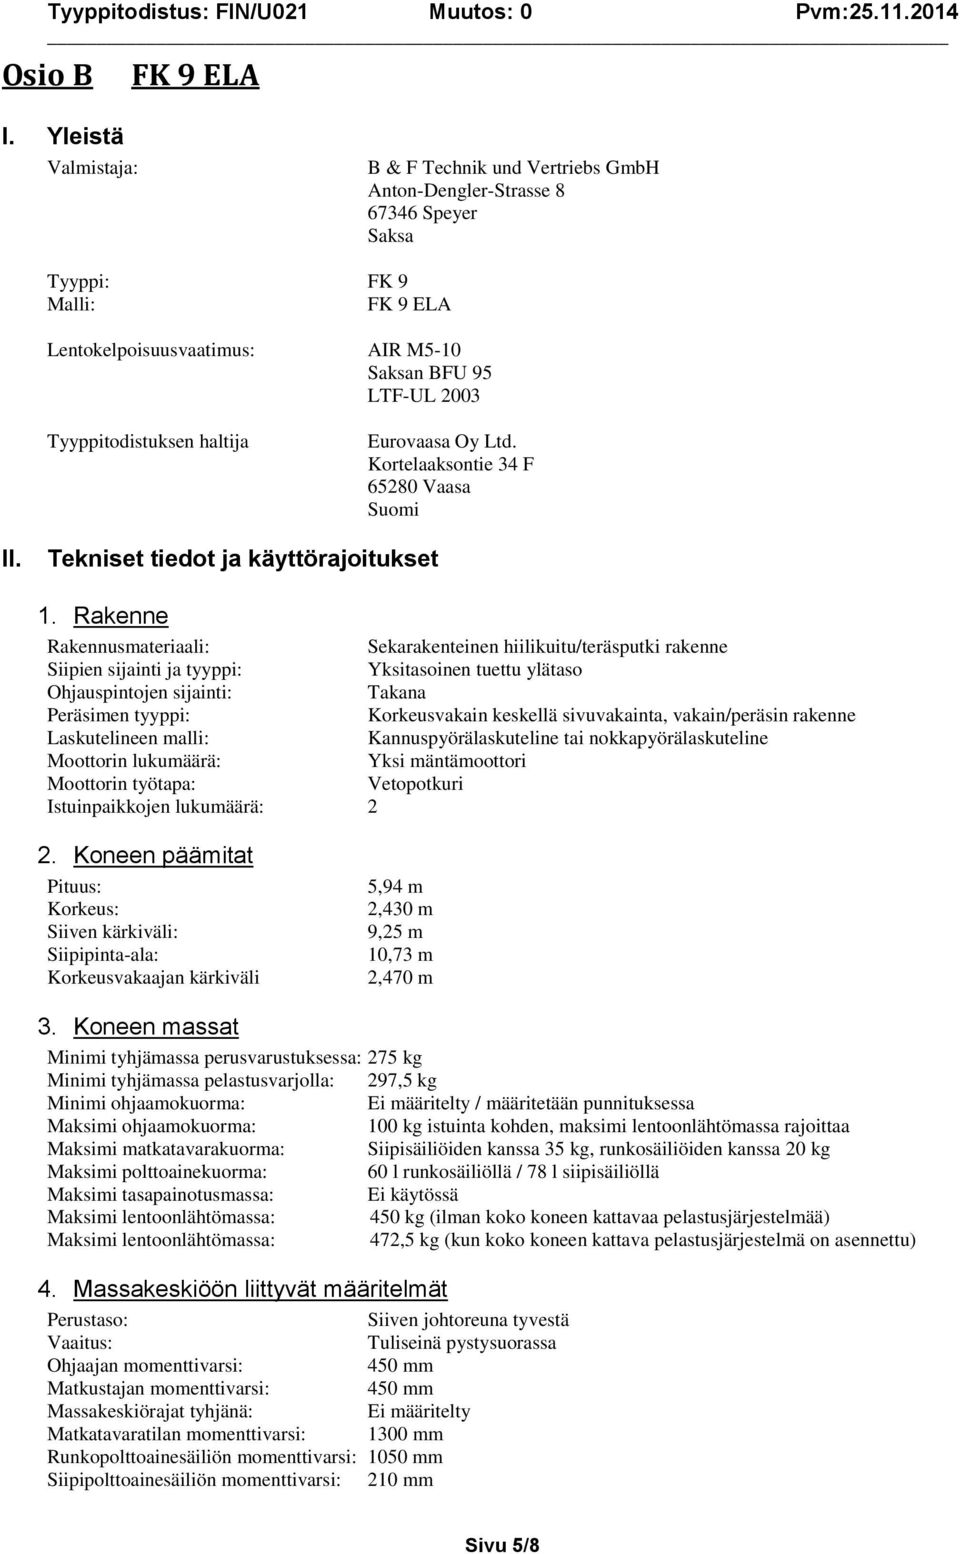 Eurovaasa Oy Ltd. Kortelaaksontie 34 F 65280 Vaasa Suomi II. Tekniset tiedot ja käyttörajoitukset 1.